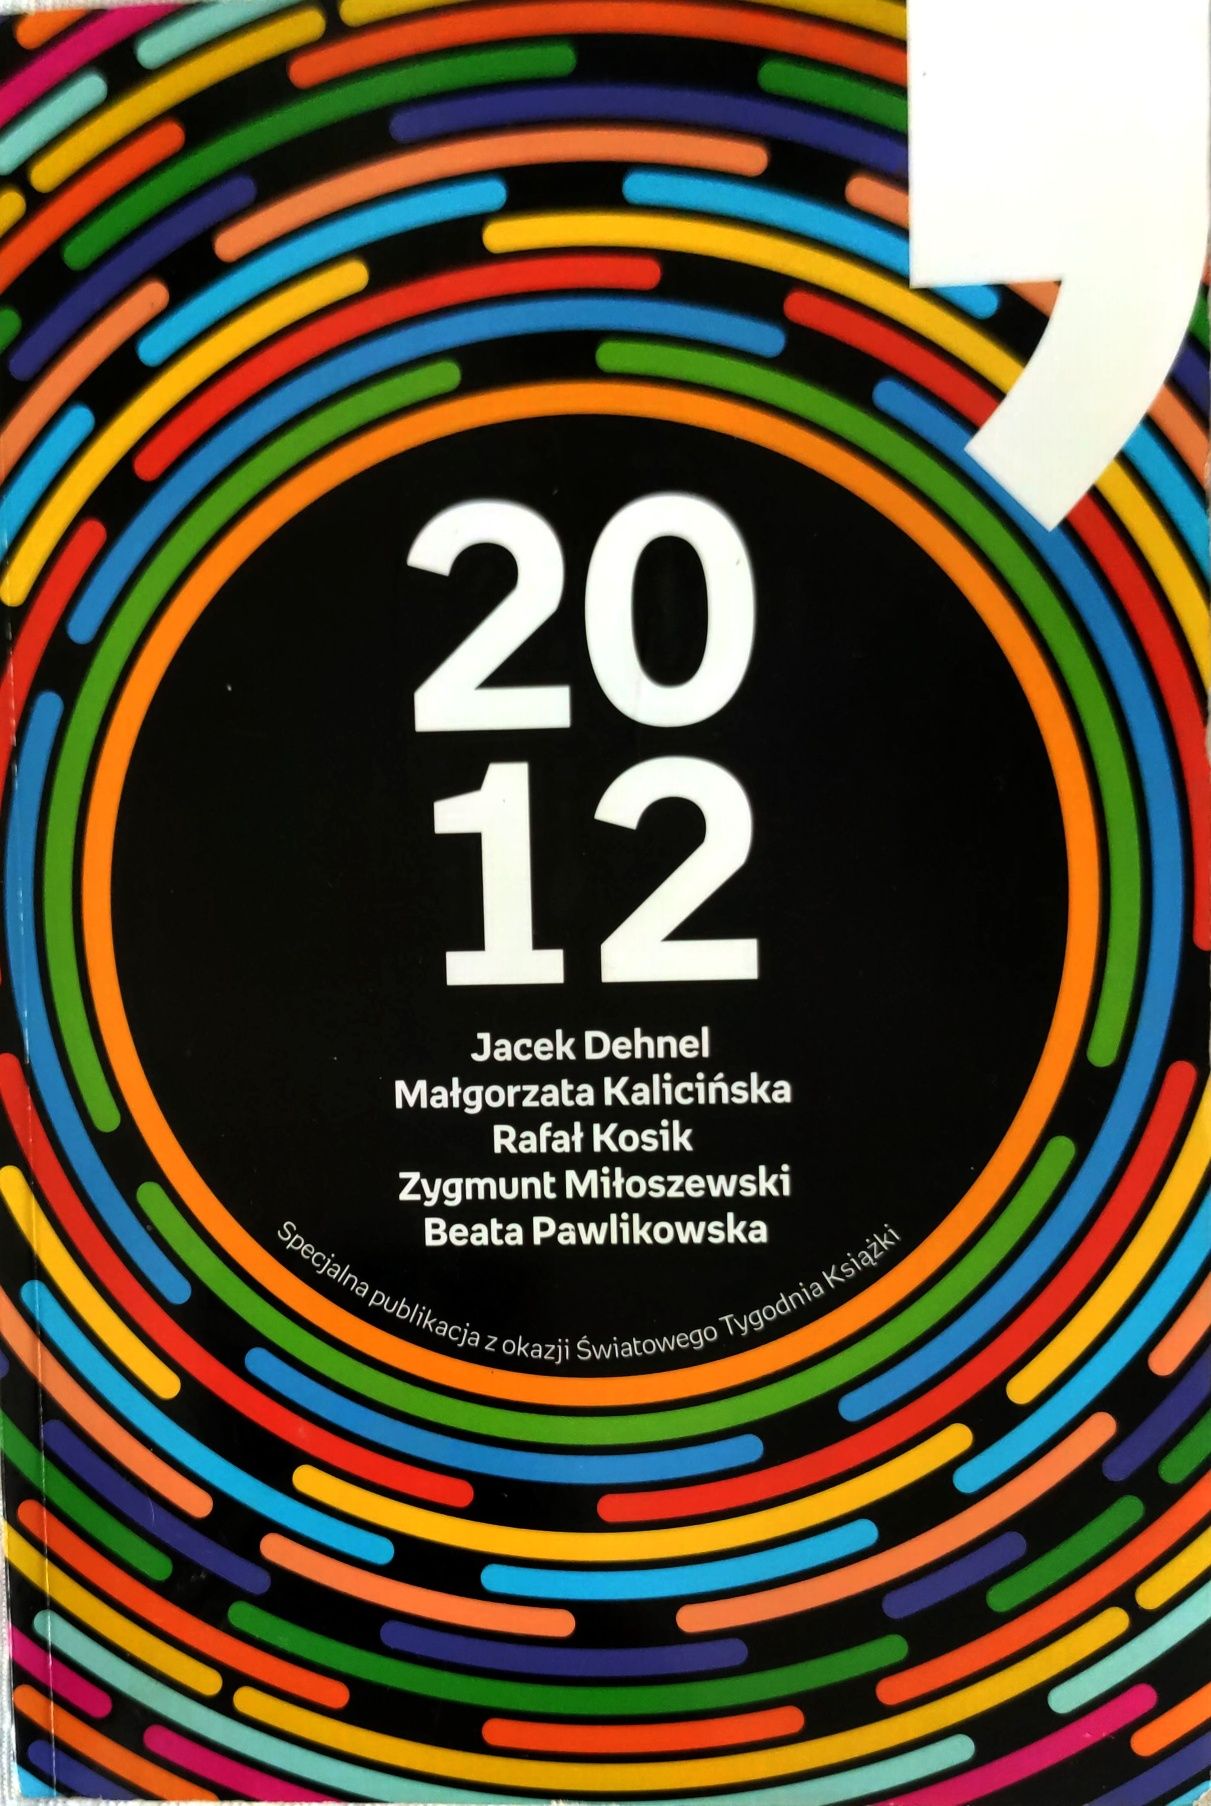 Książka "2012" J.Dehnel, Z.Miłoszewski, M.Kaliścińska, B.Pawlikowska,